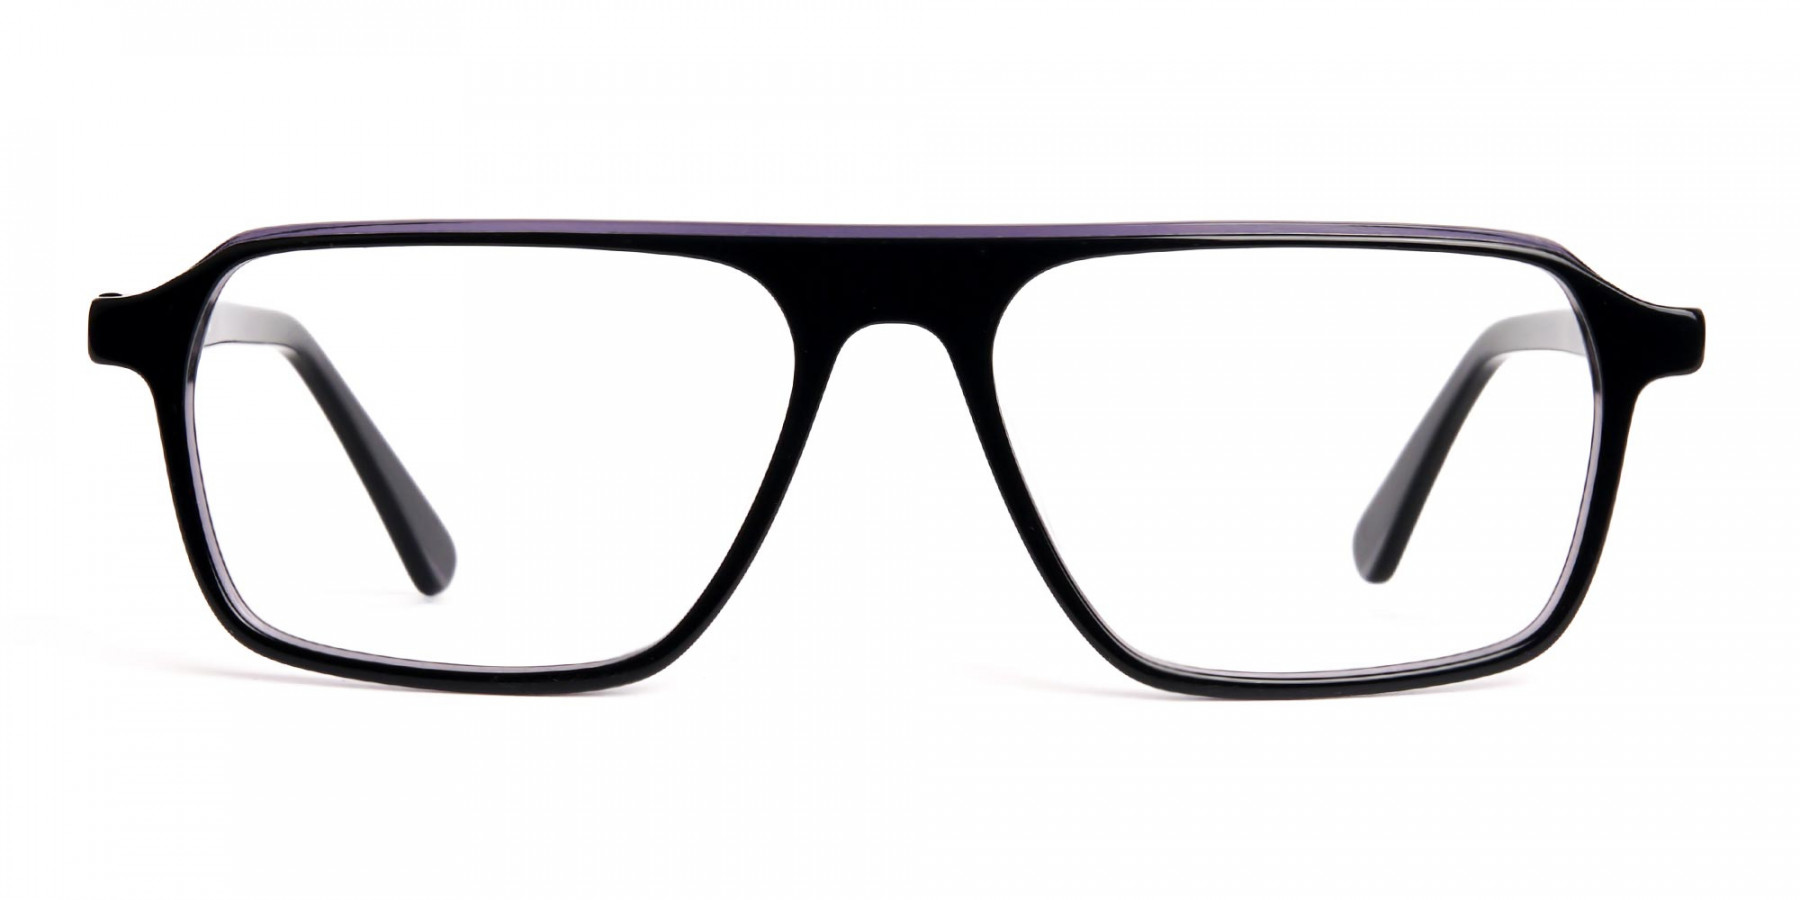 Black-and-Grey-Rectangular-Full-Rim-Glasses-frames-1